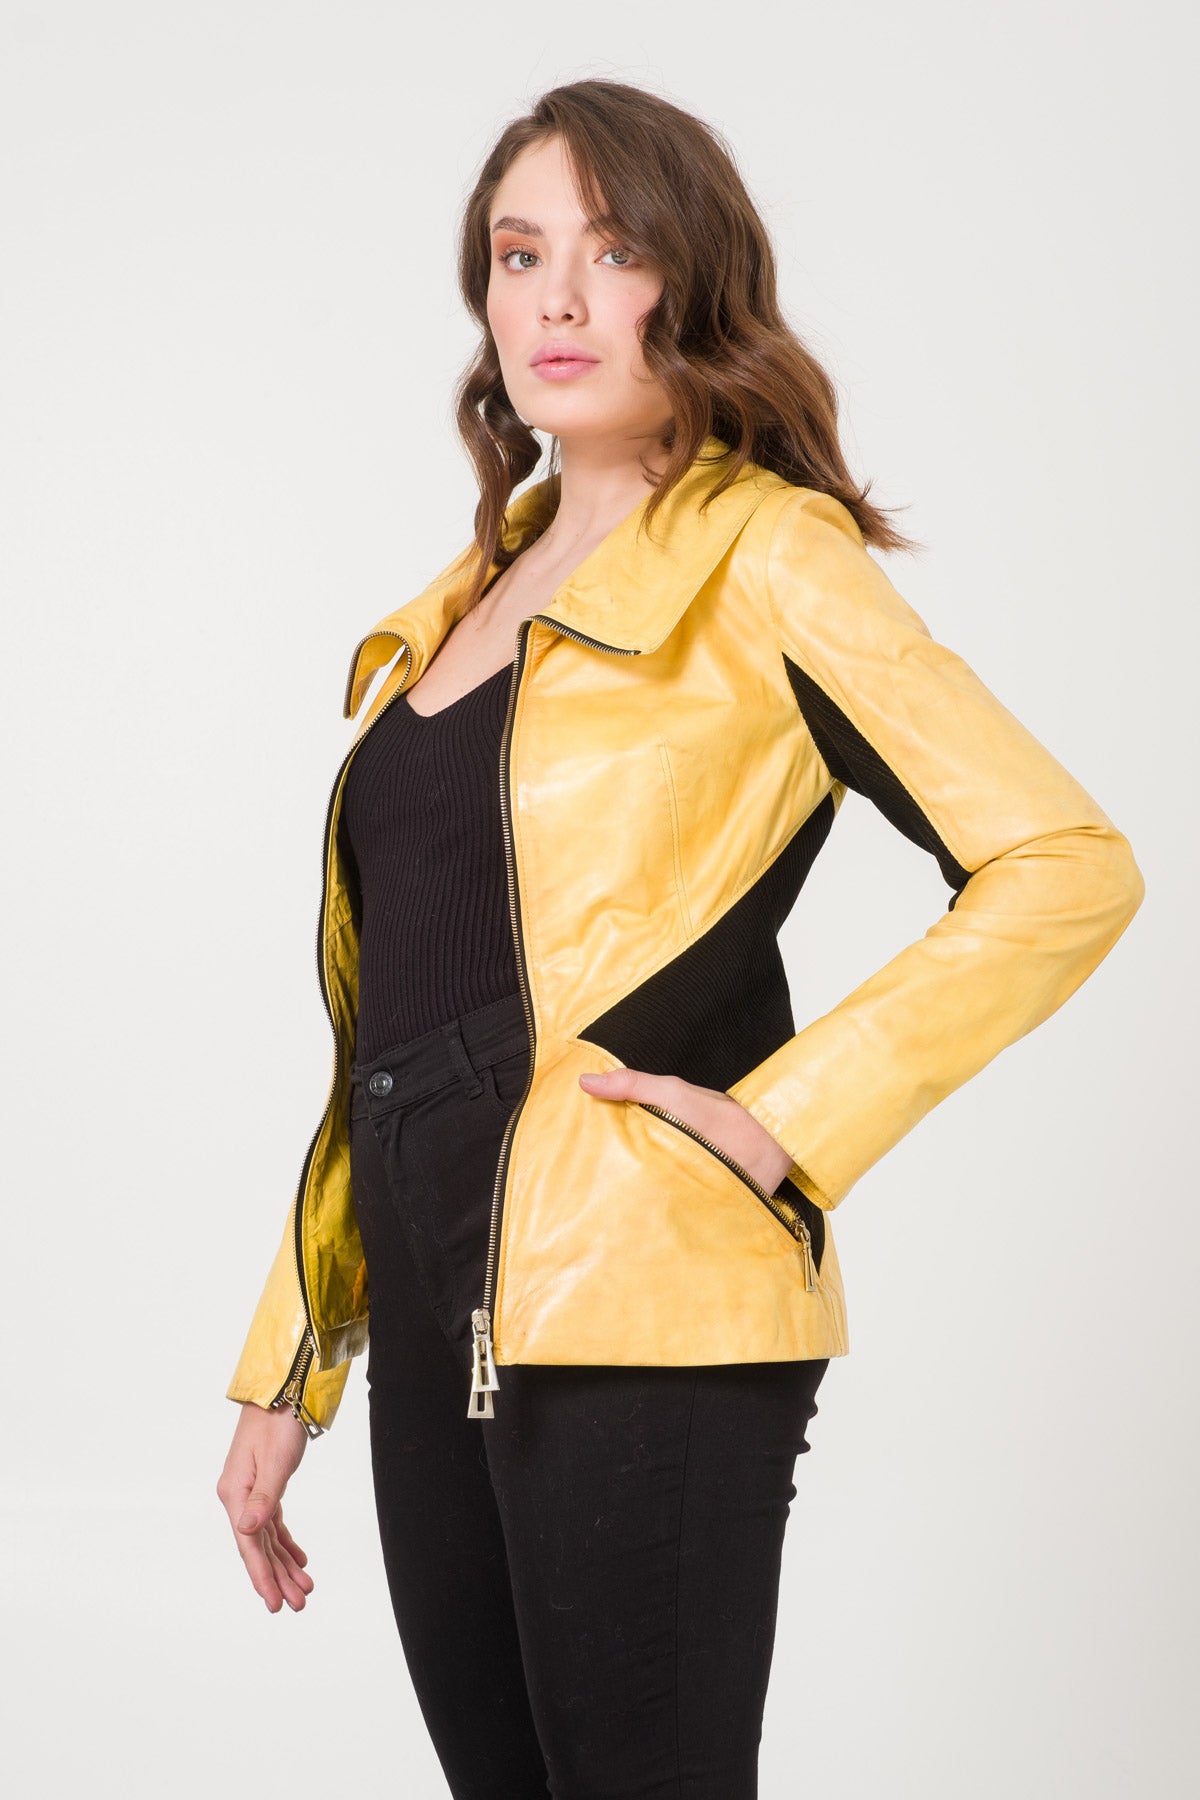 Yellow Leather Jacket